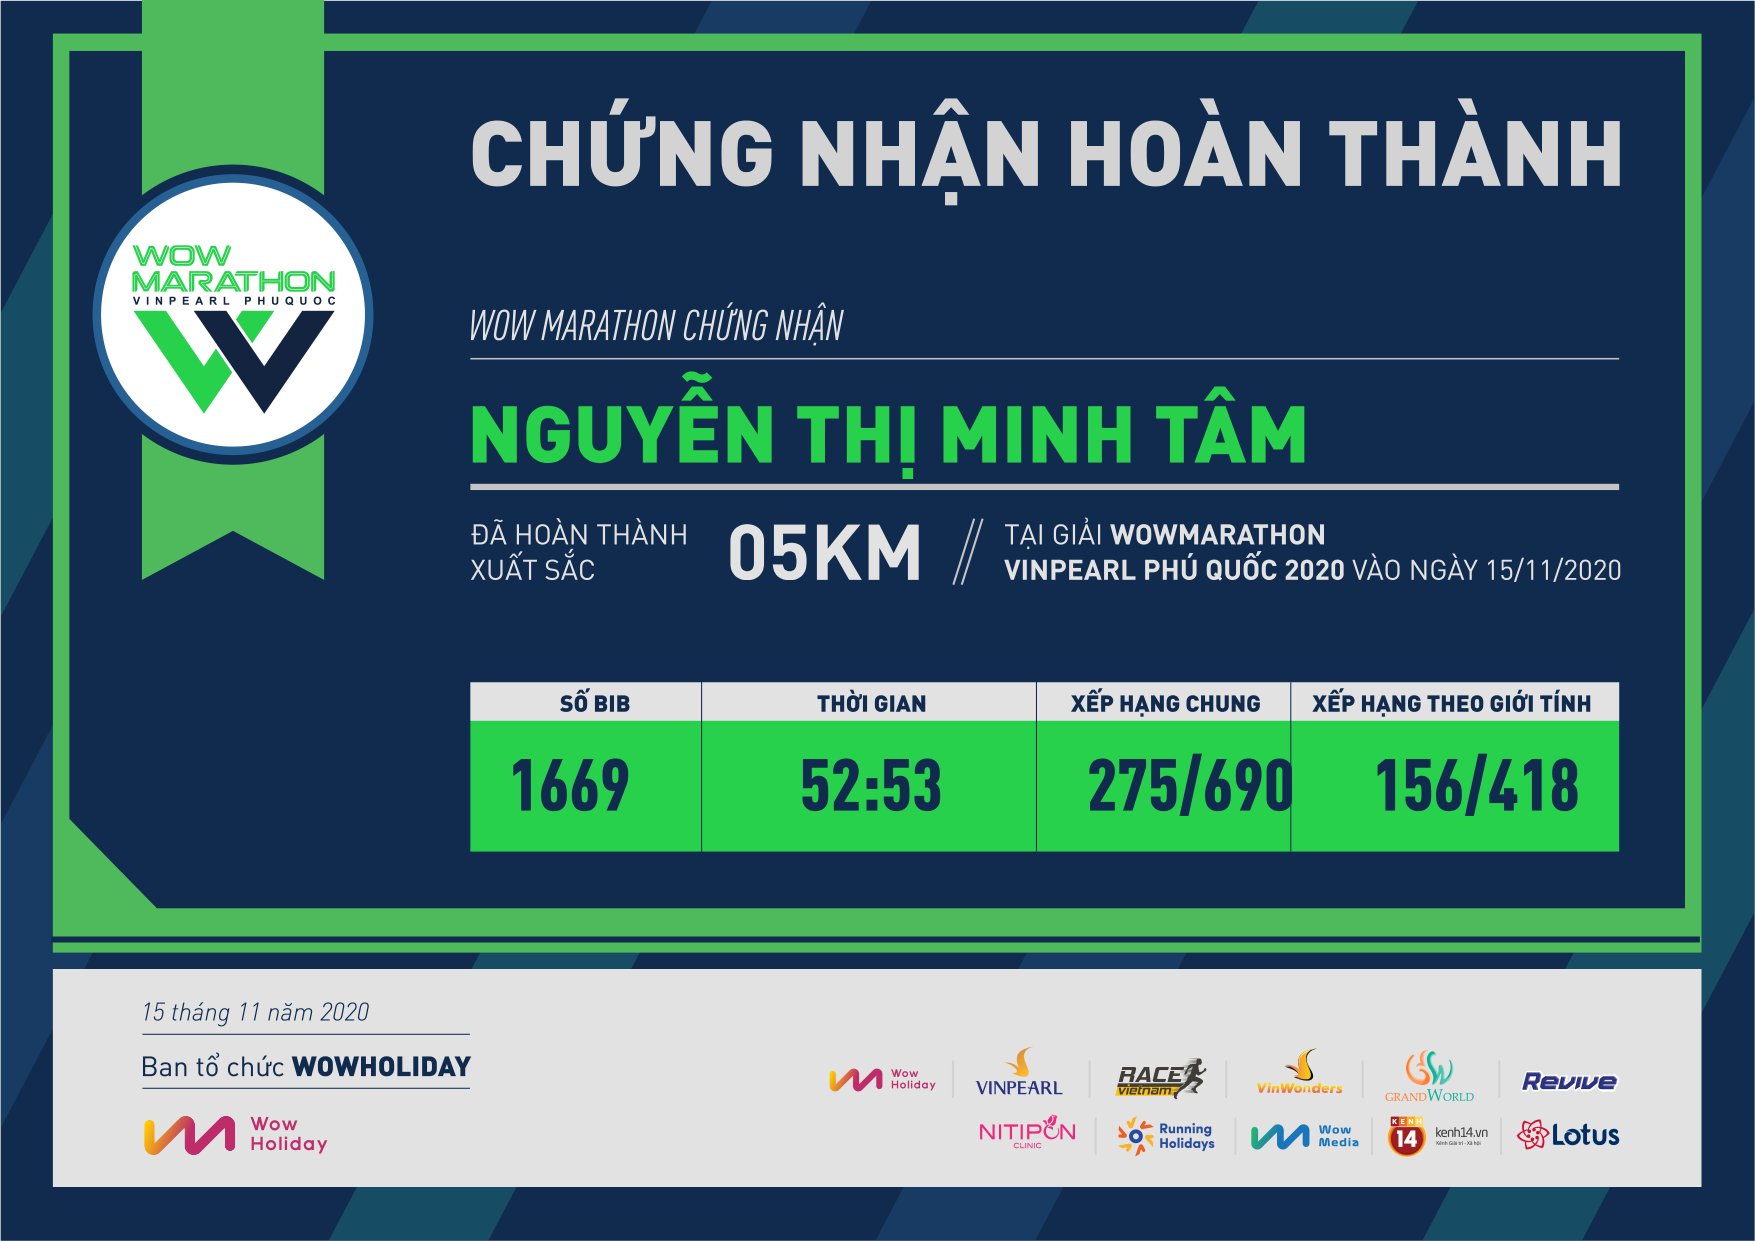 1669 - Nguyễn Thị Minh Tâm